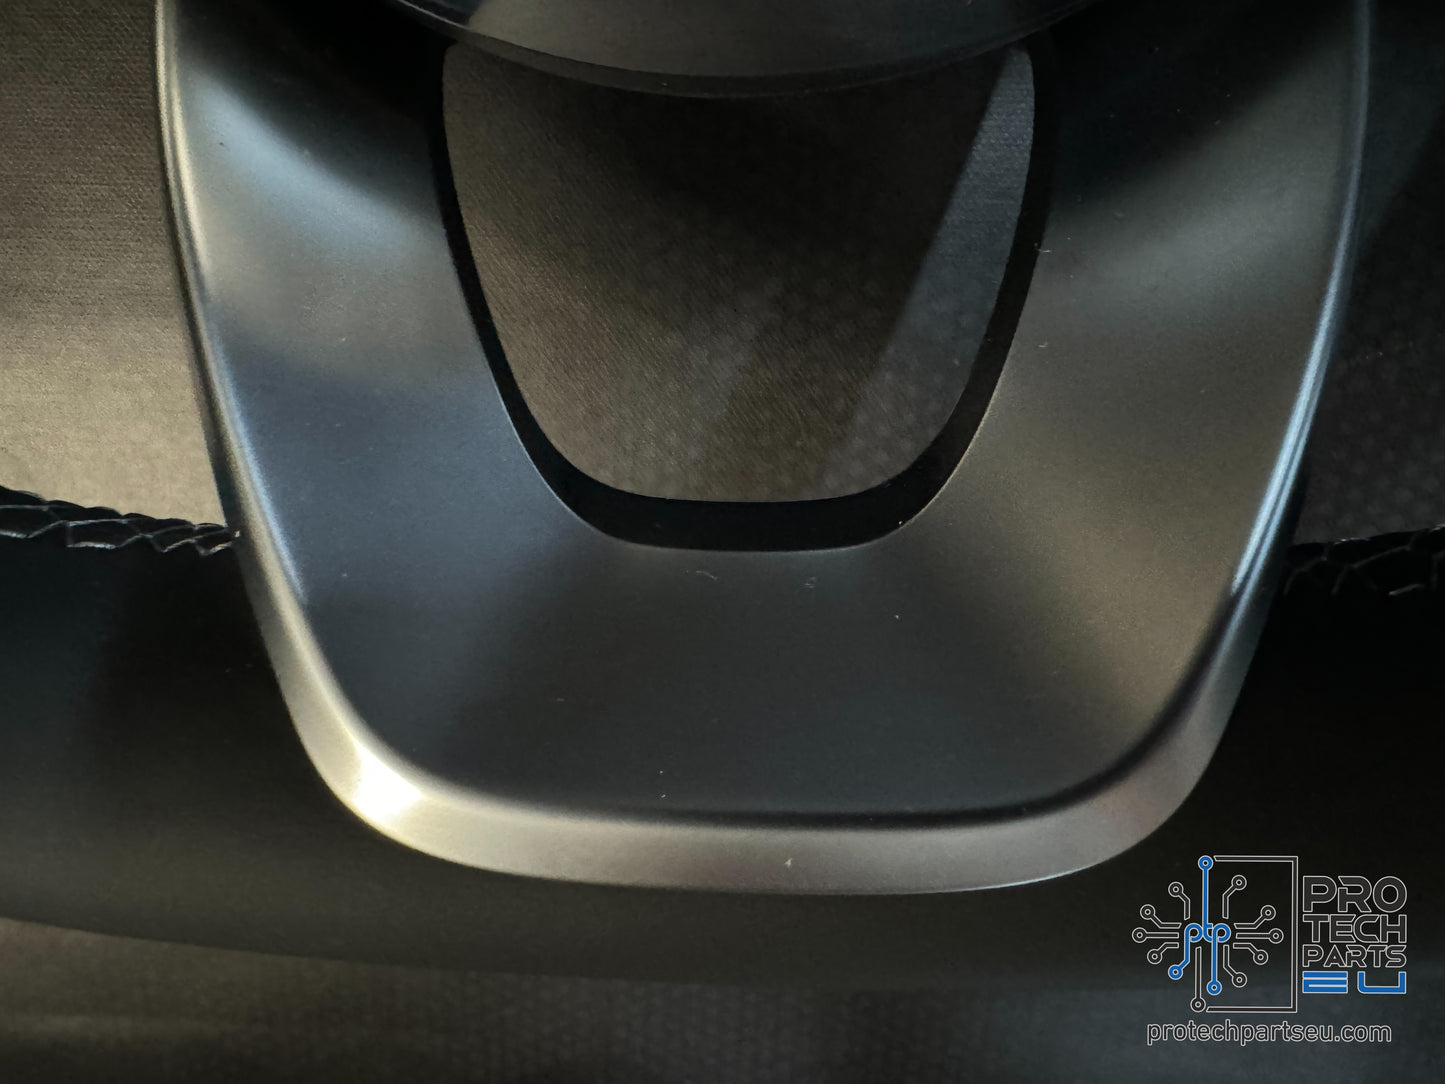 
                  
                    Mercedes AMG - super sport steering wheel alcantara/leather grey stitch w205,w222,w167,w177 etc
                  
                